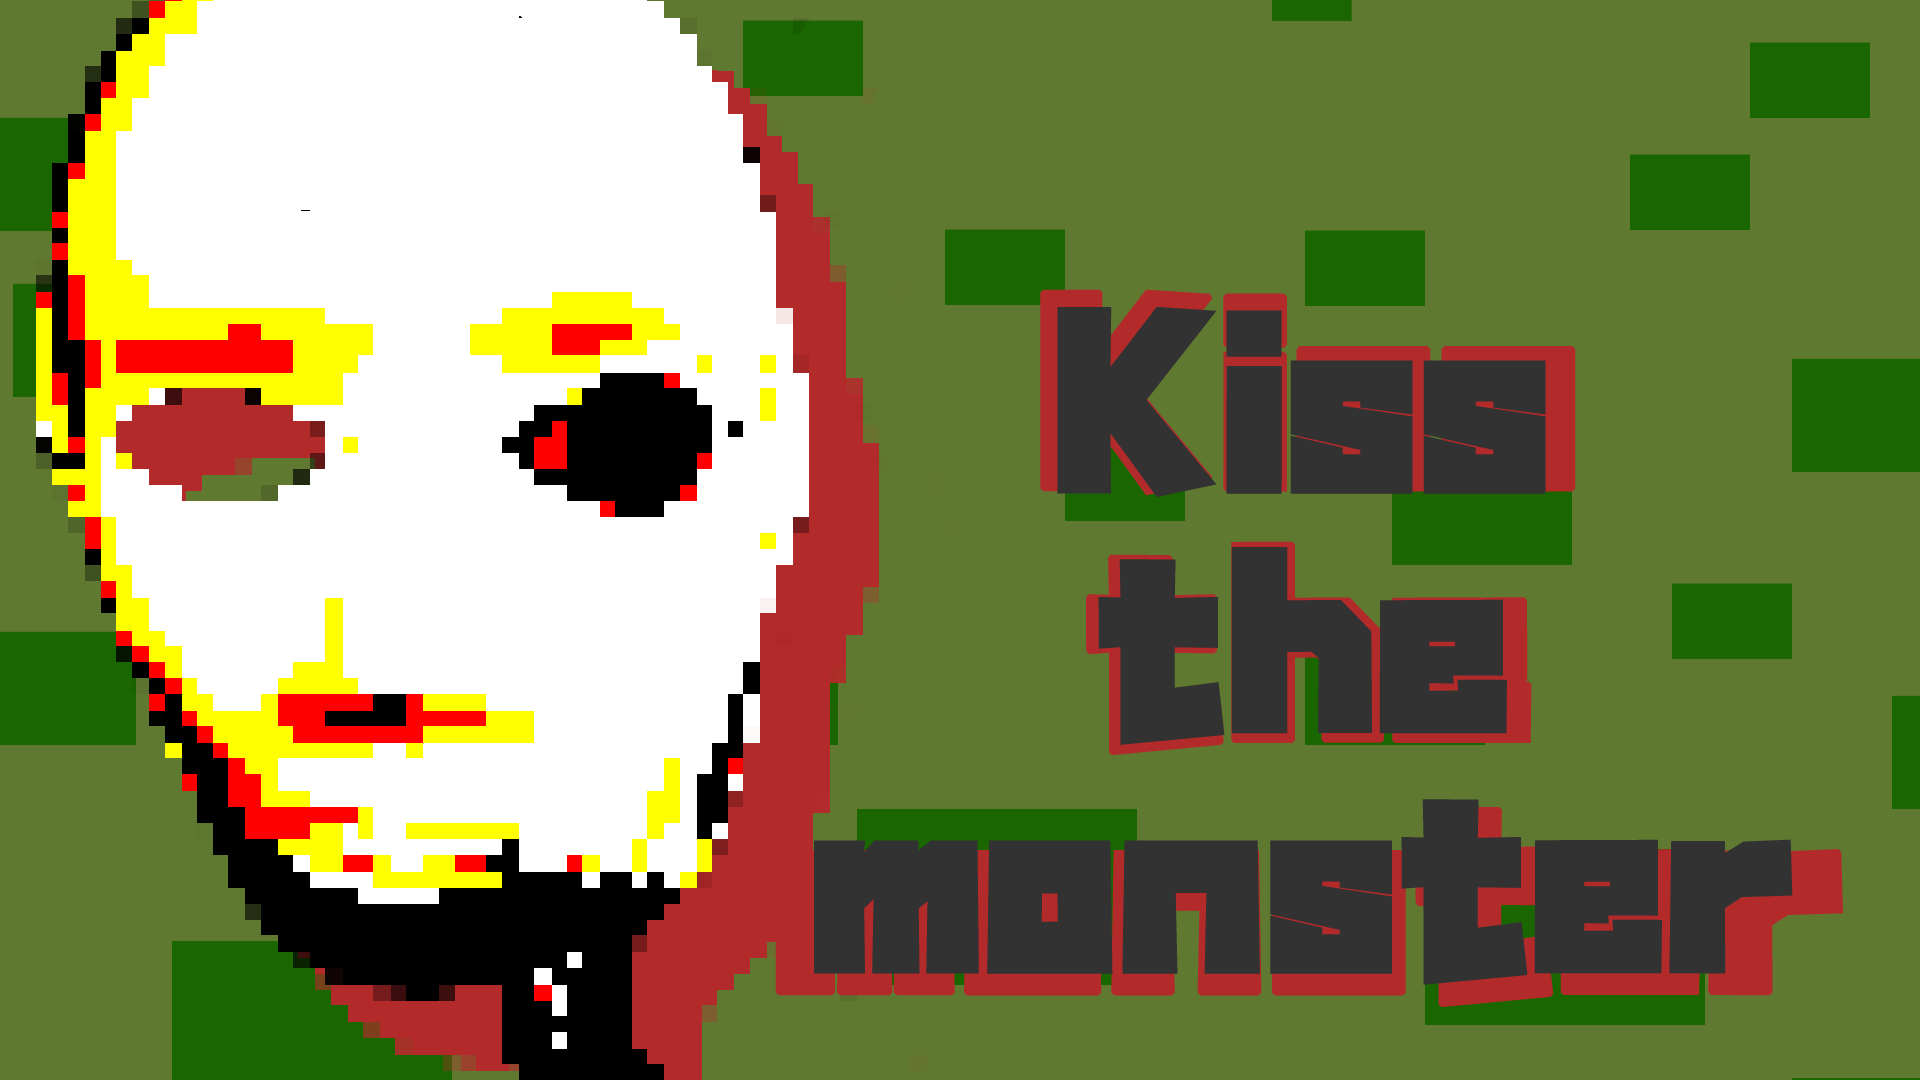 Kiss the monster